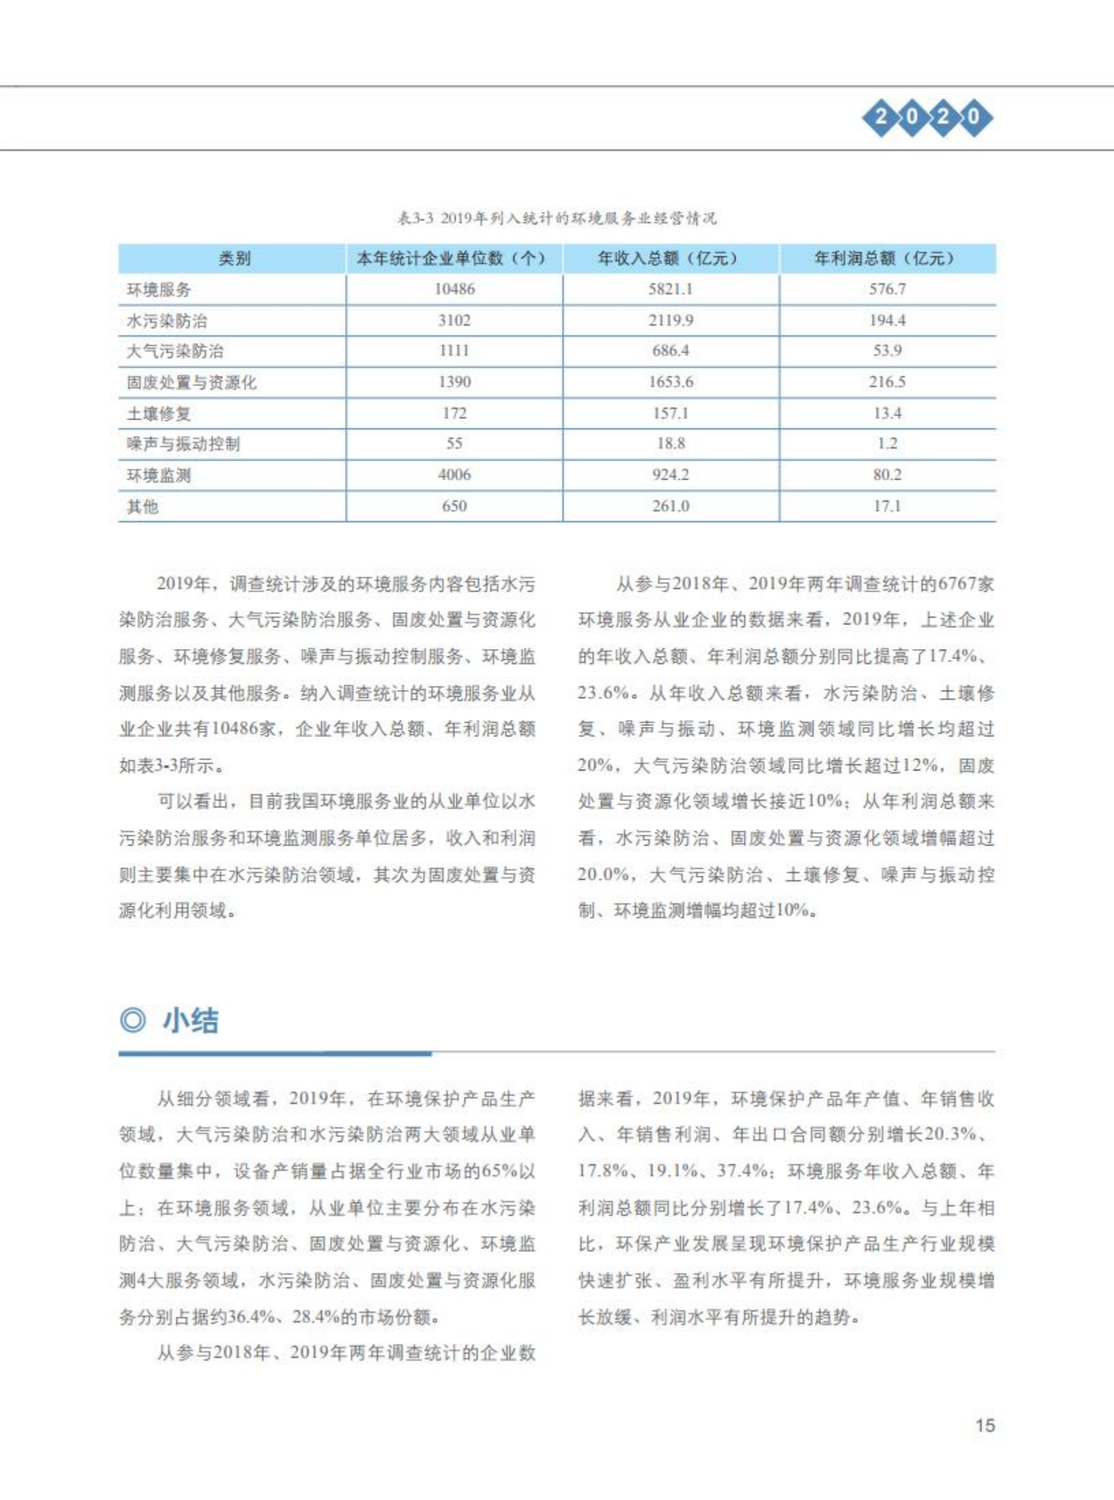 【2020】中国环保产业发展状况报告_16.png